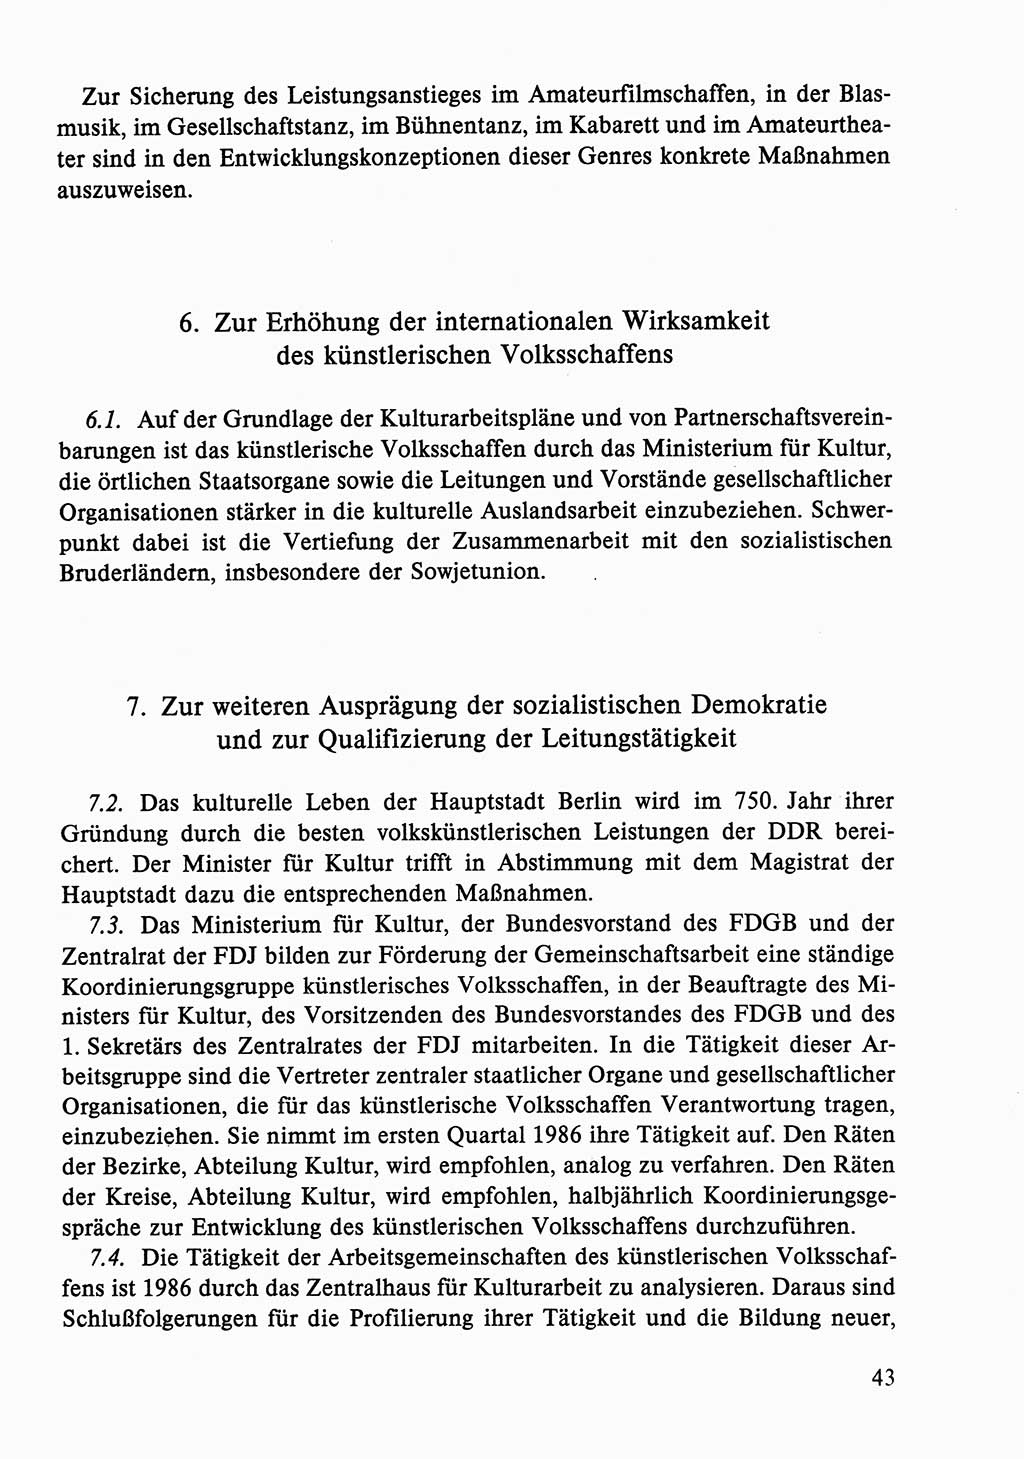 Dokumente der Sozialistischen Einheitspartei Deutschlands (SED) [Deutsche Demokratische Republik (DDR)] 1986-1987, Seite 43 (Dok. SED DDR 1986-1987, S. 43)